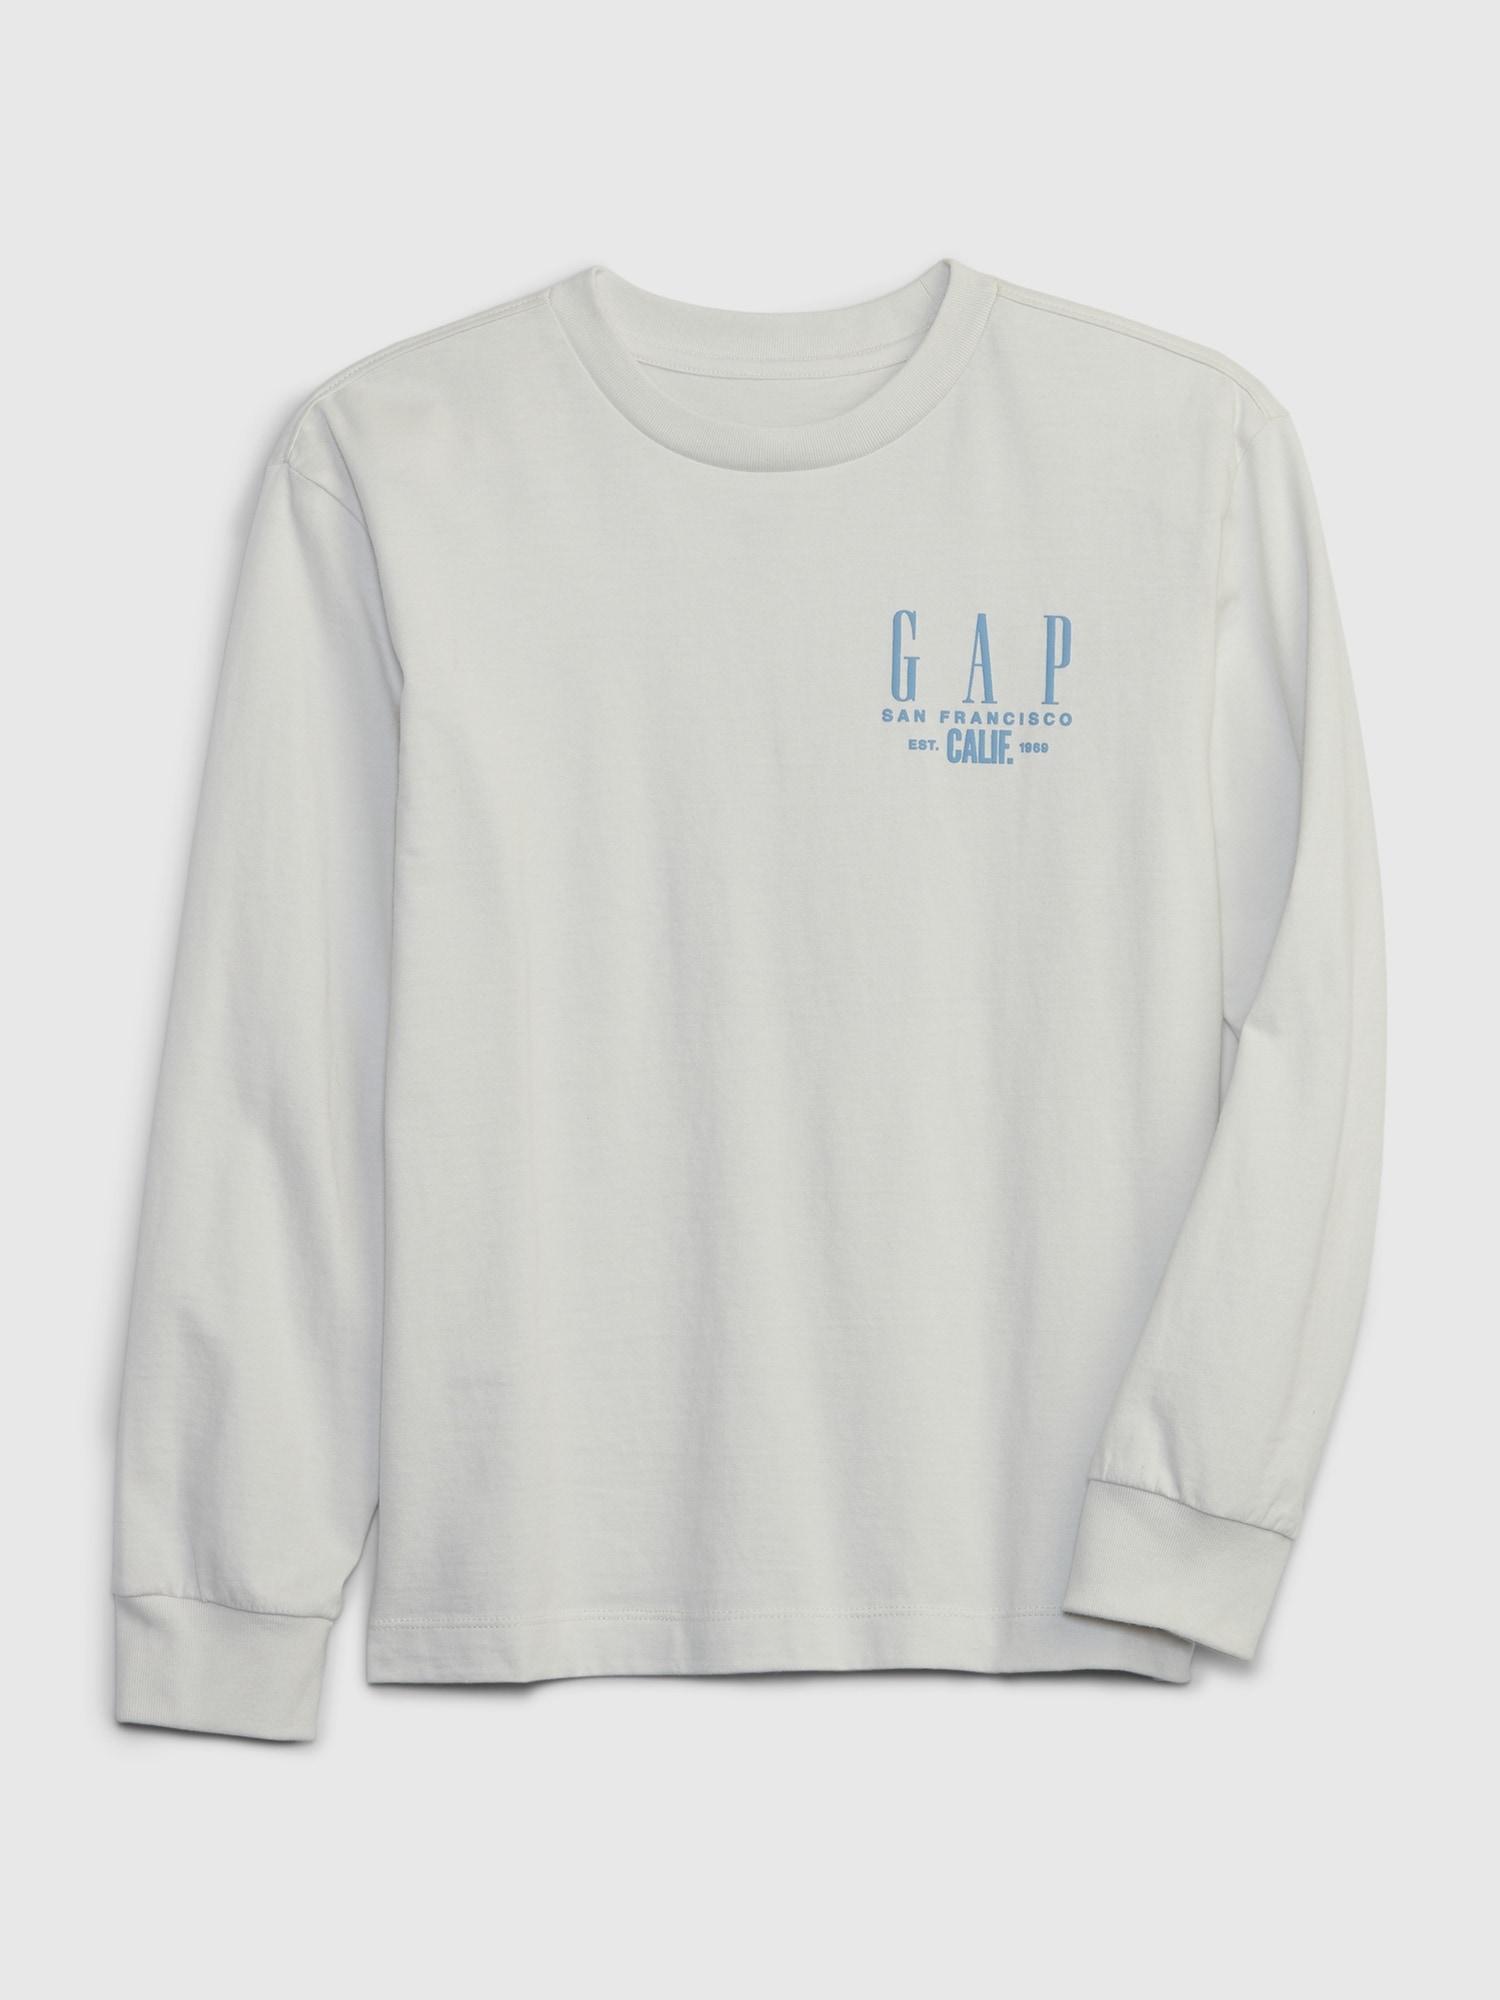 GAP ロングTシャツ 140cm - トップス(Tシャツ